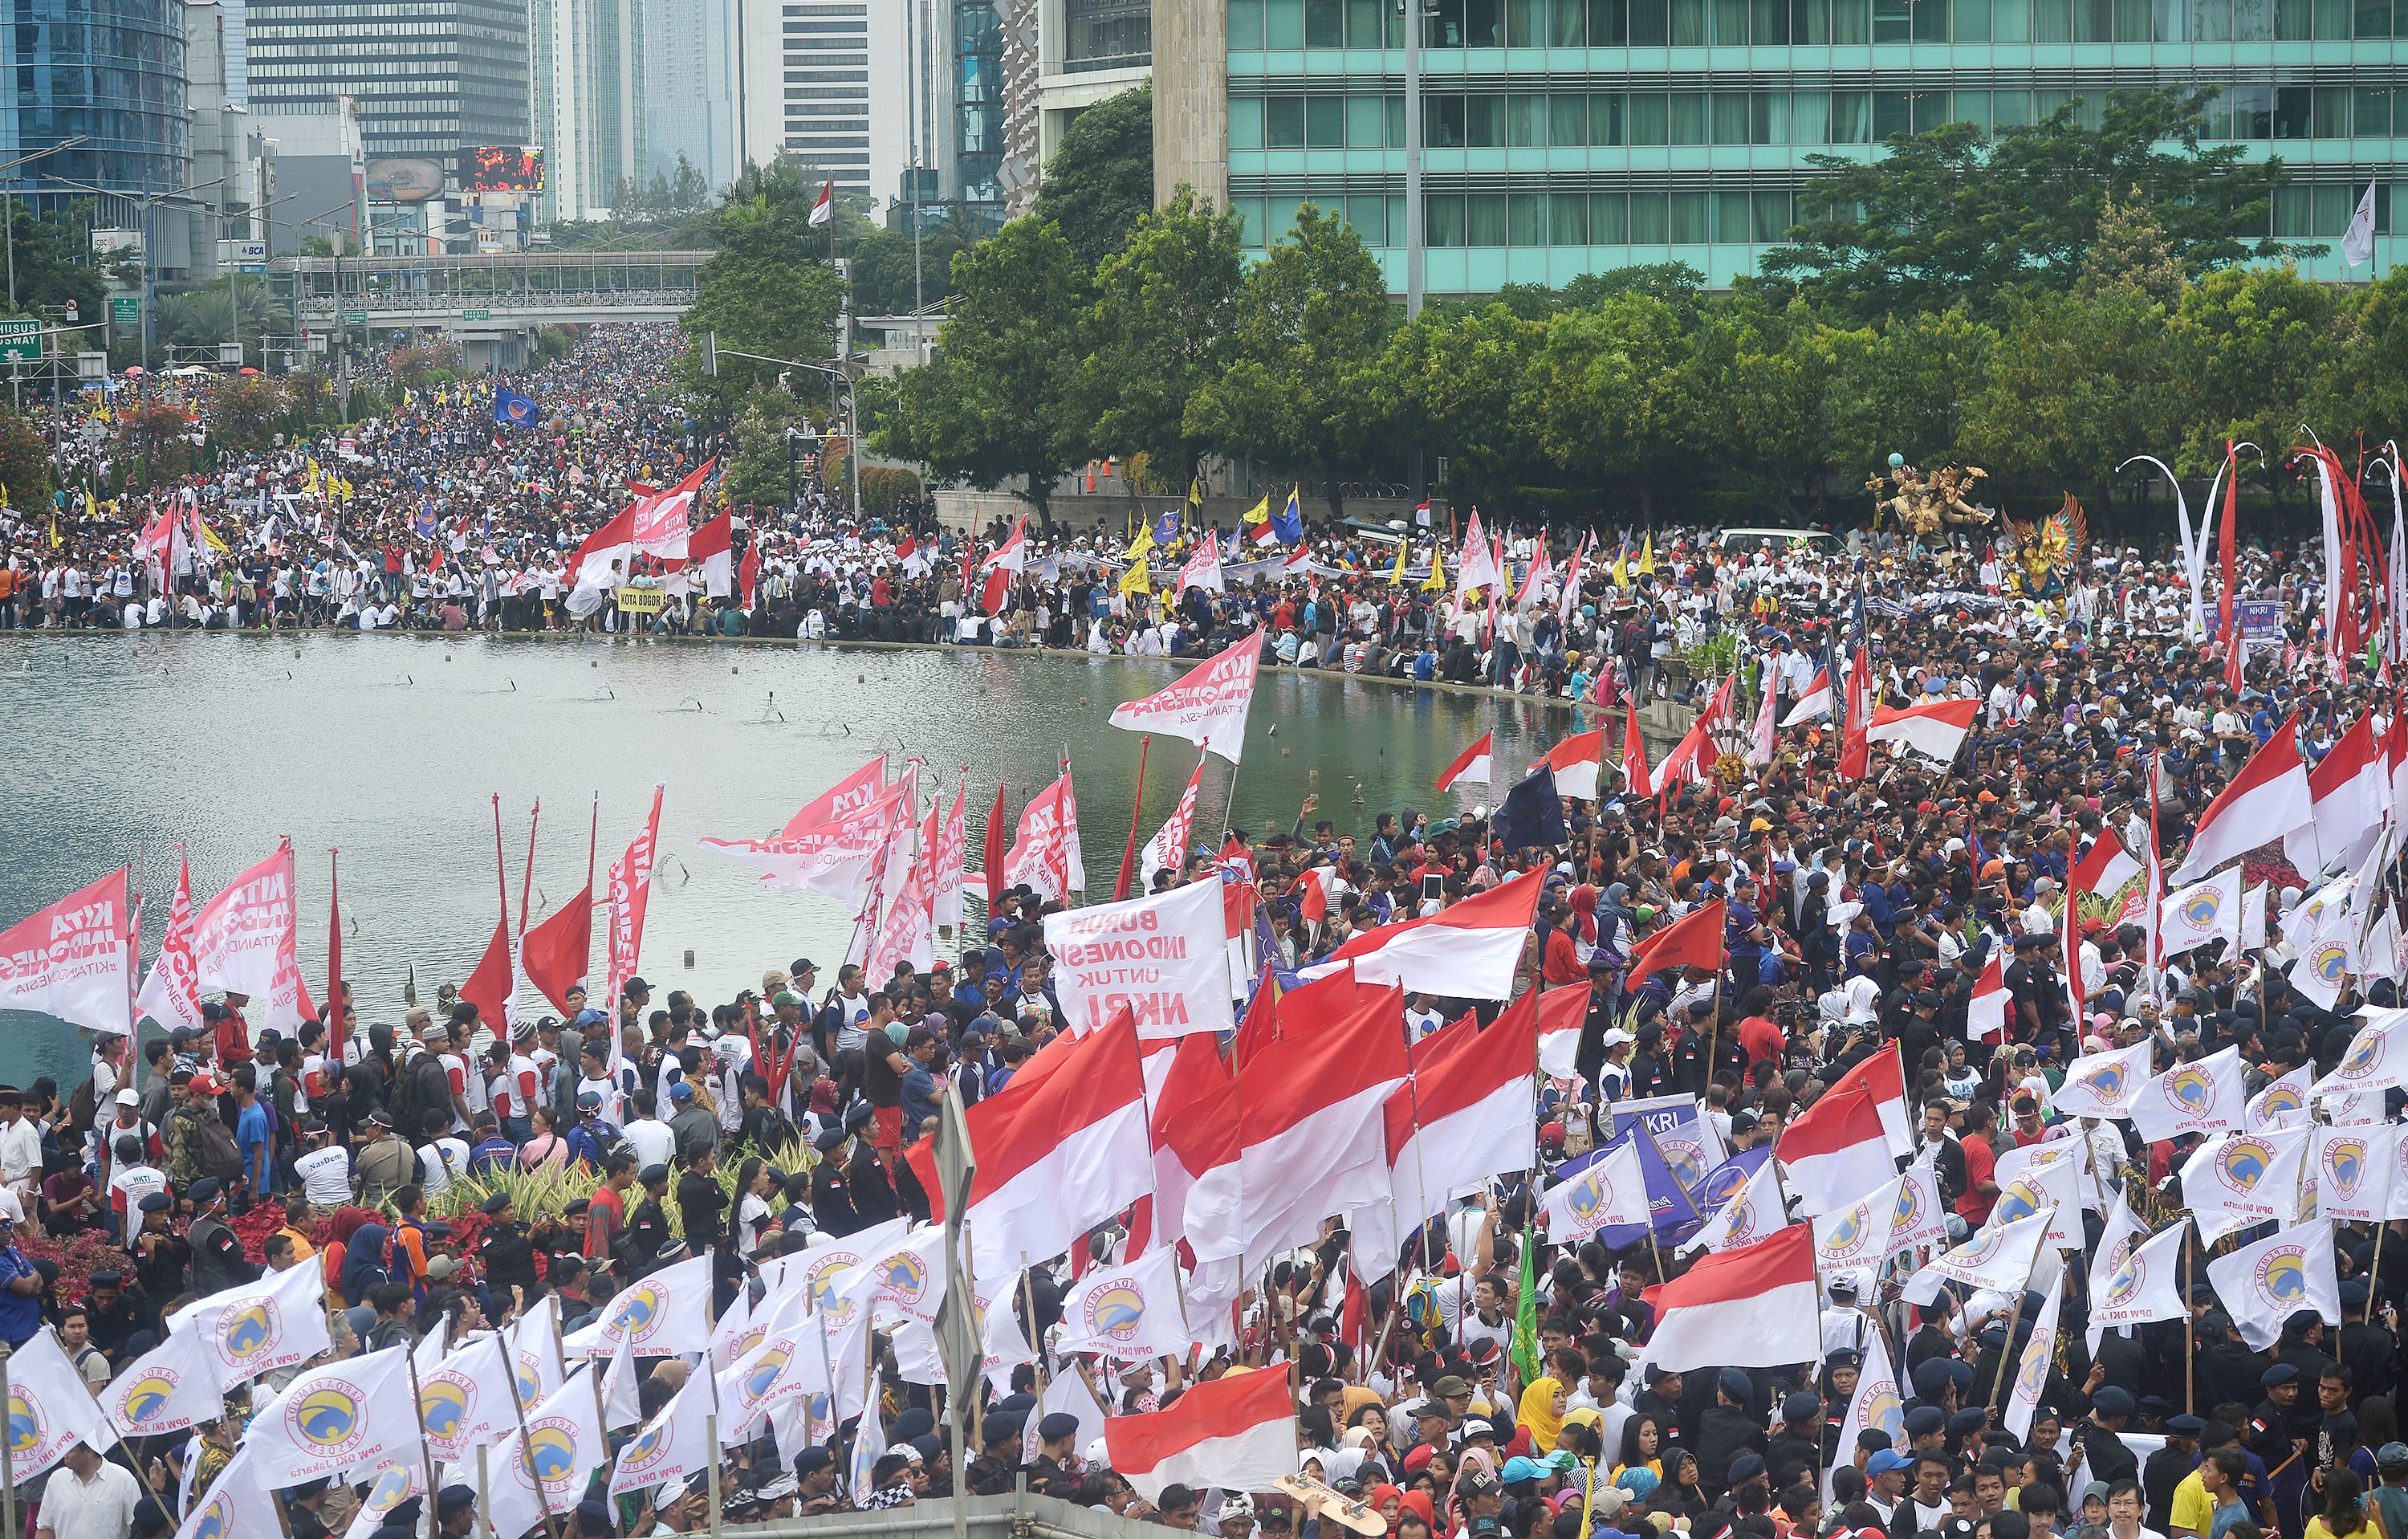 Massa yang tergabung dalam Aliansi Kebhinekaan mengikuti parade "Kita Indonesia" di Bundaran HI, Jakarta, pada 4 Desember 2015. Foto oleh Yudhi Mahatma/Antara 